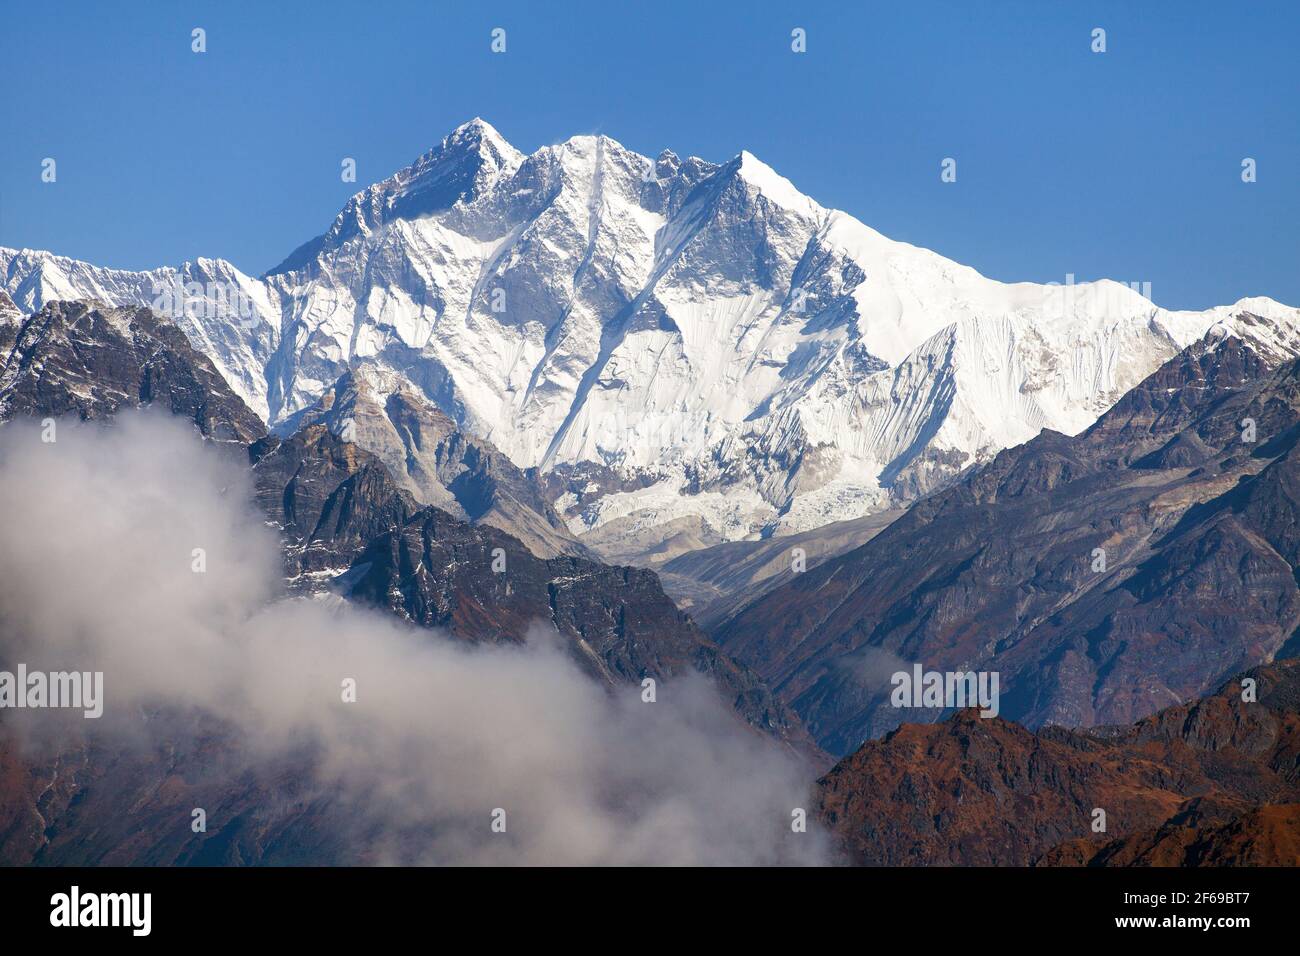 Mount Everest and Lhotse from Silijung hill near Salpa pass, great himalayan range, Nepal himalayas mountains Stock Photo